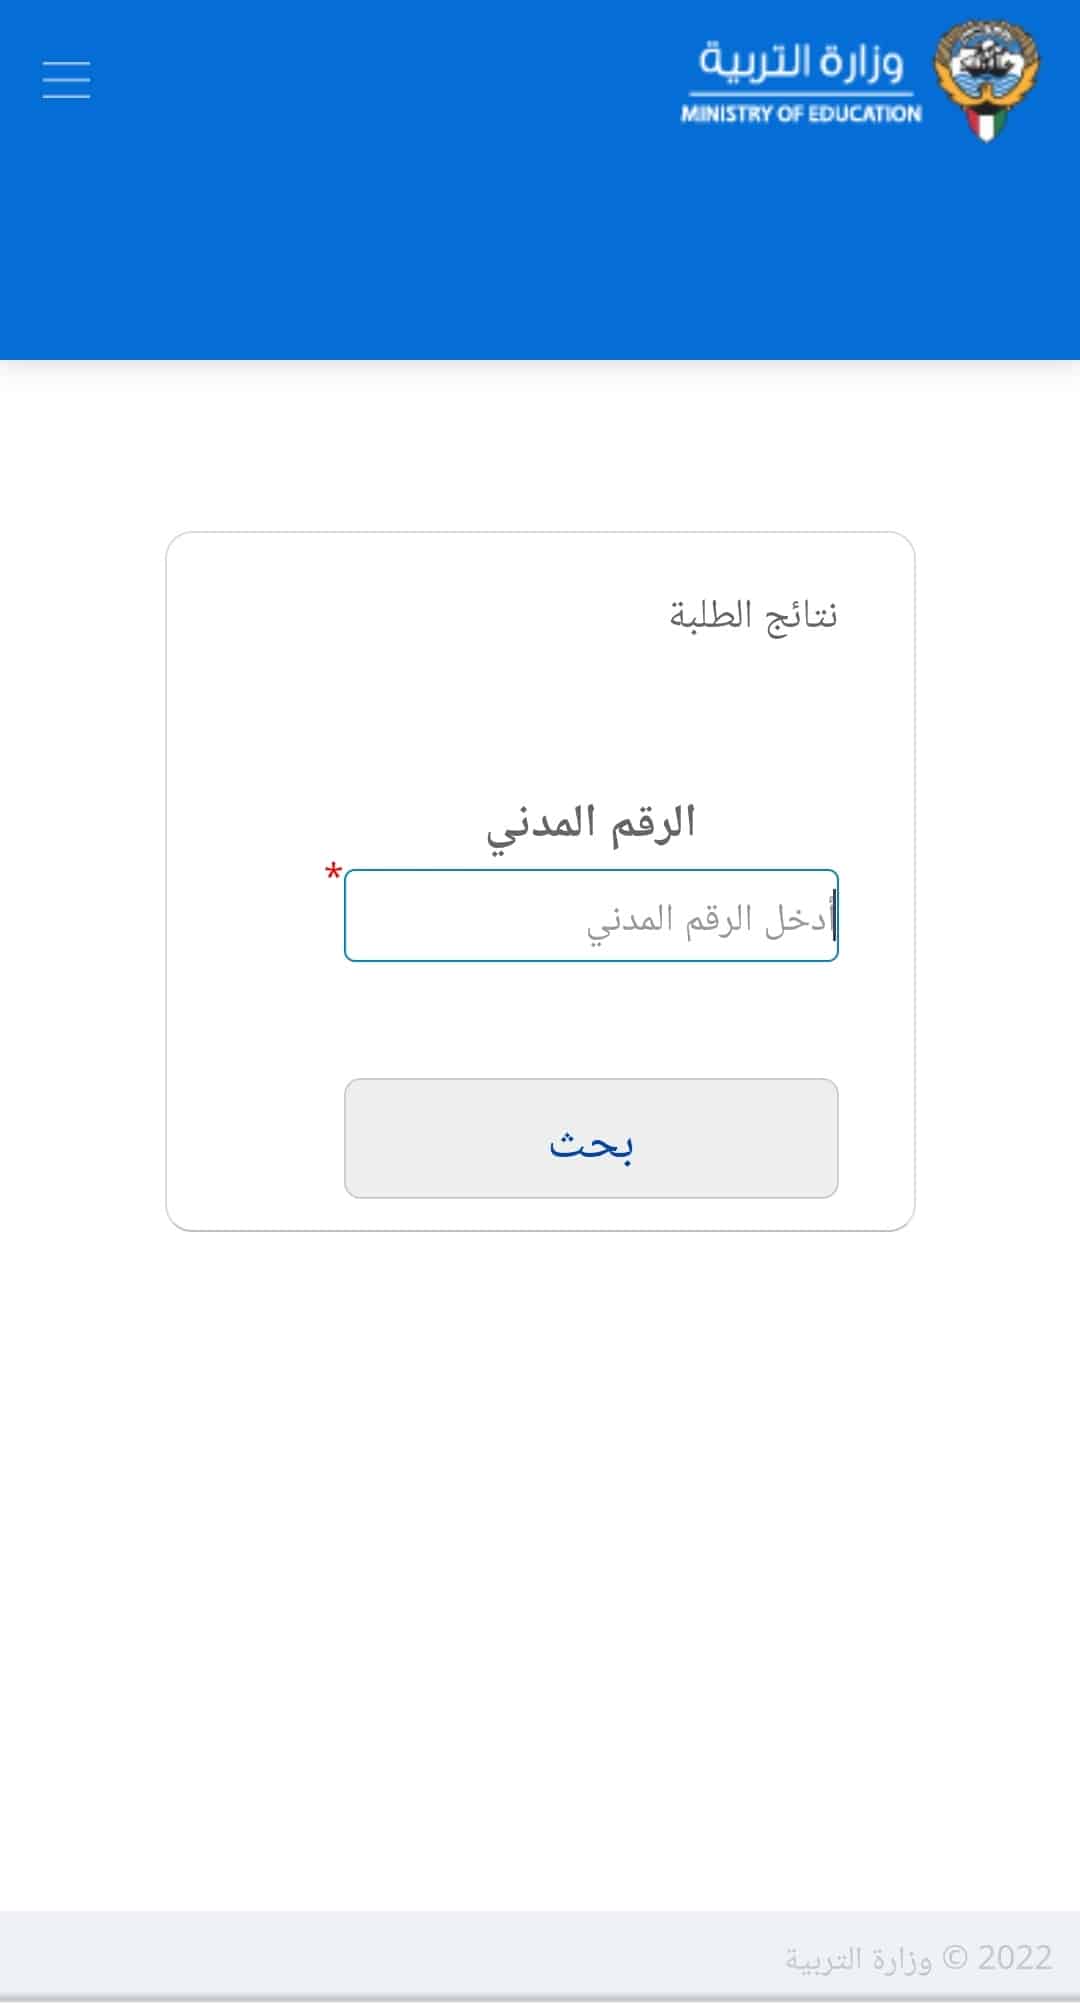 نتائج الدور الثاني الكويت 2022 موقع المربع الالكتروني 